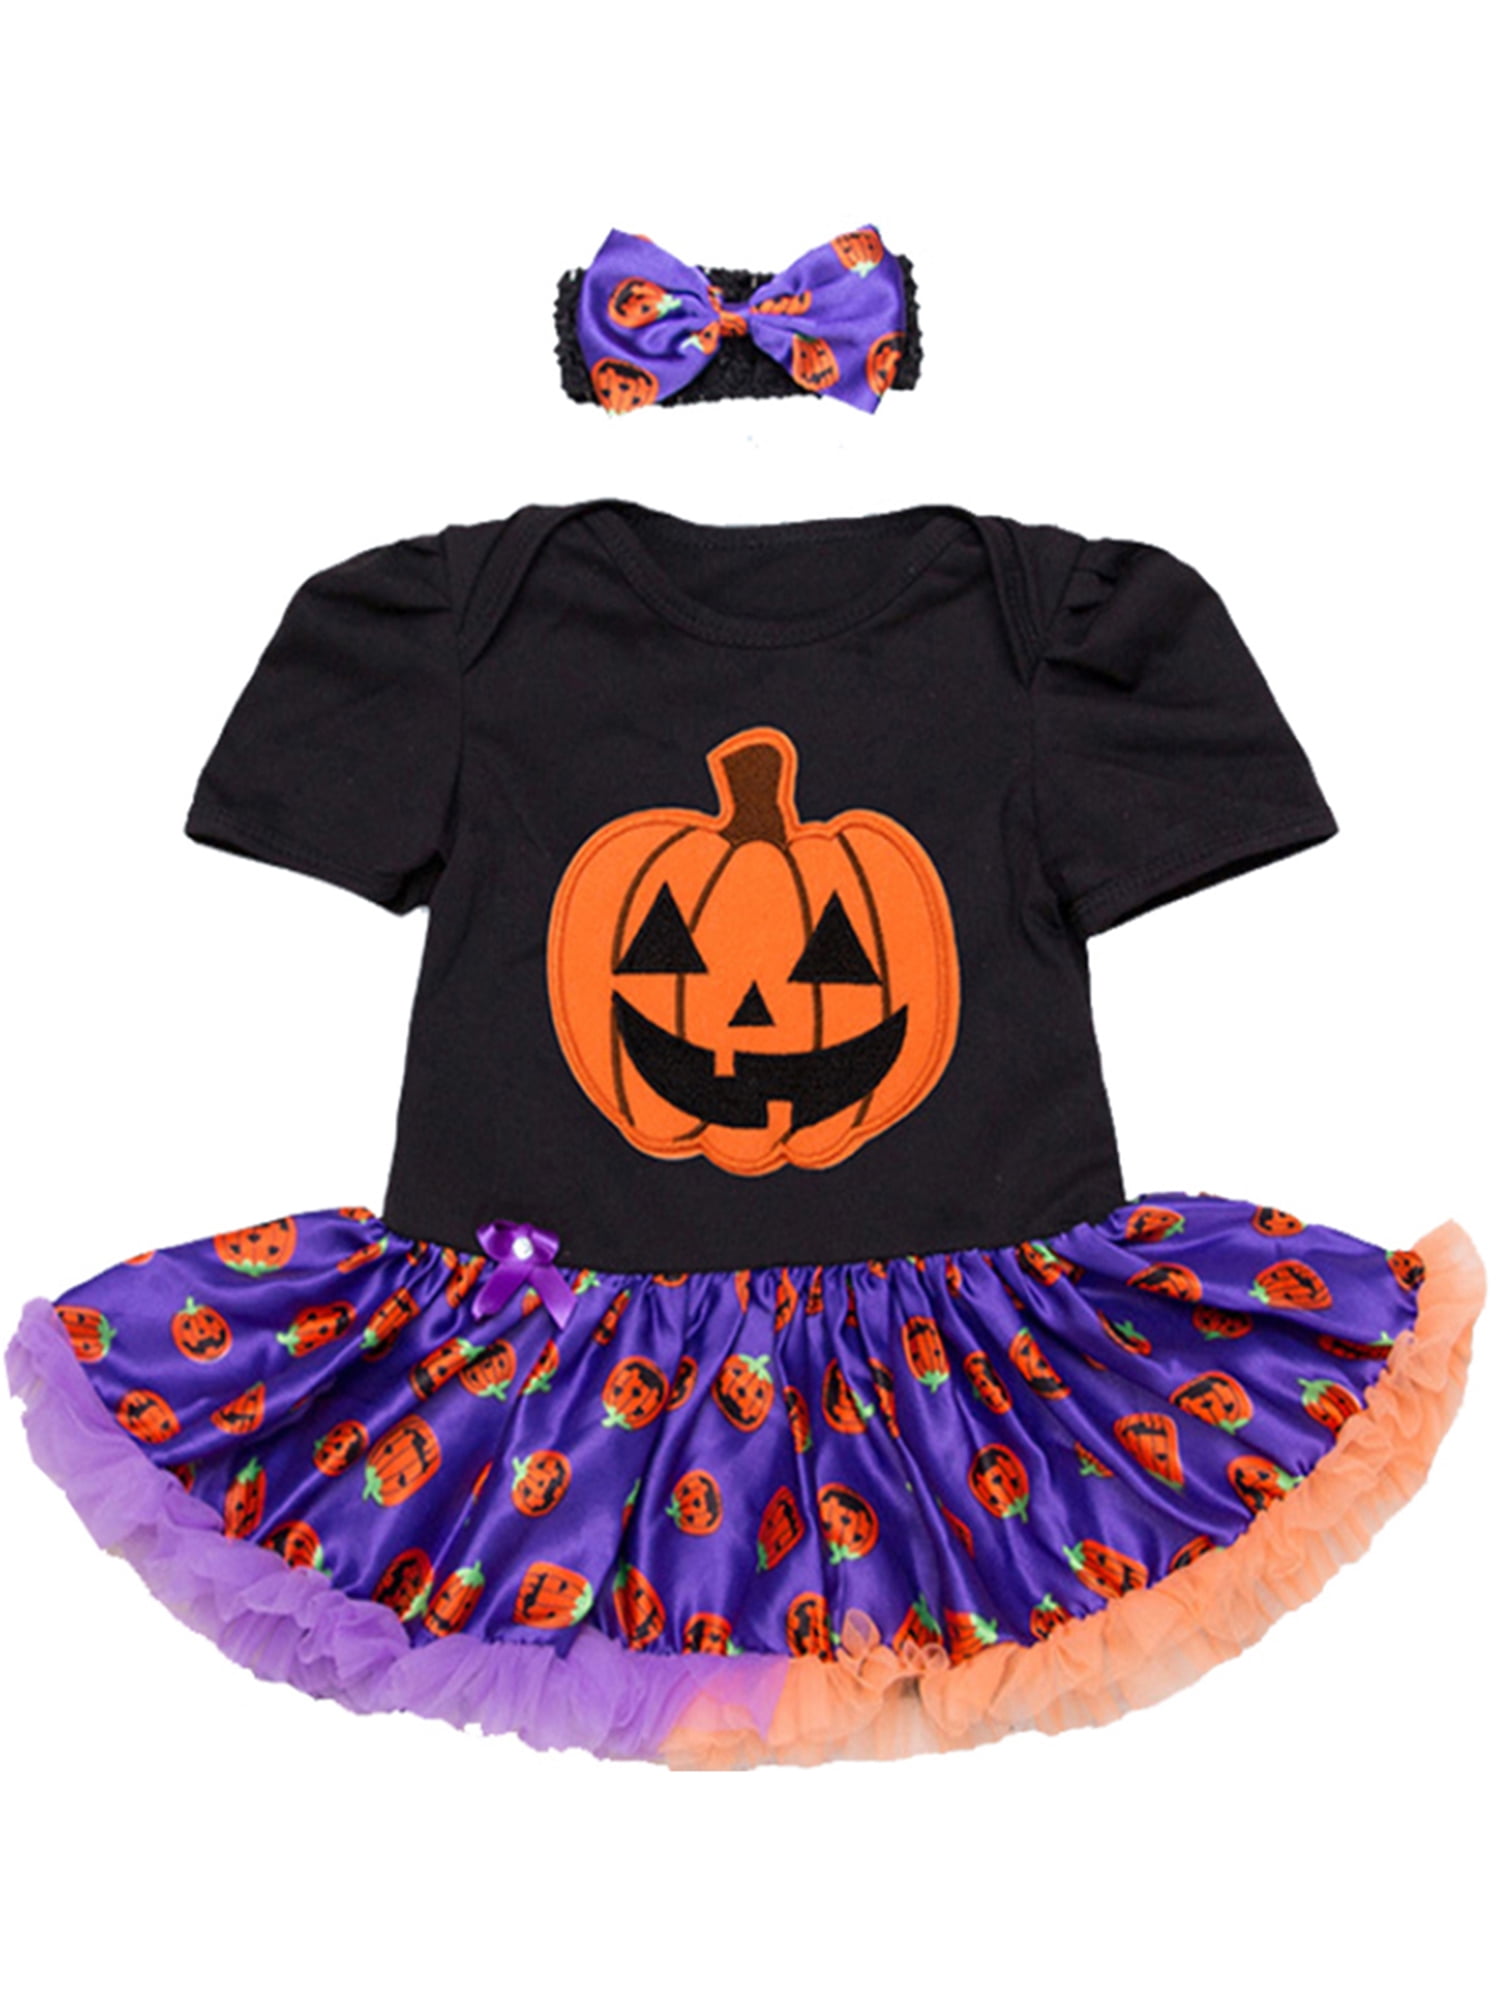 StylesILove - StylesILove Infant Baby Girl Halloween Short Sleeve ...